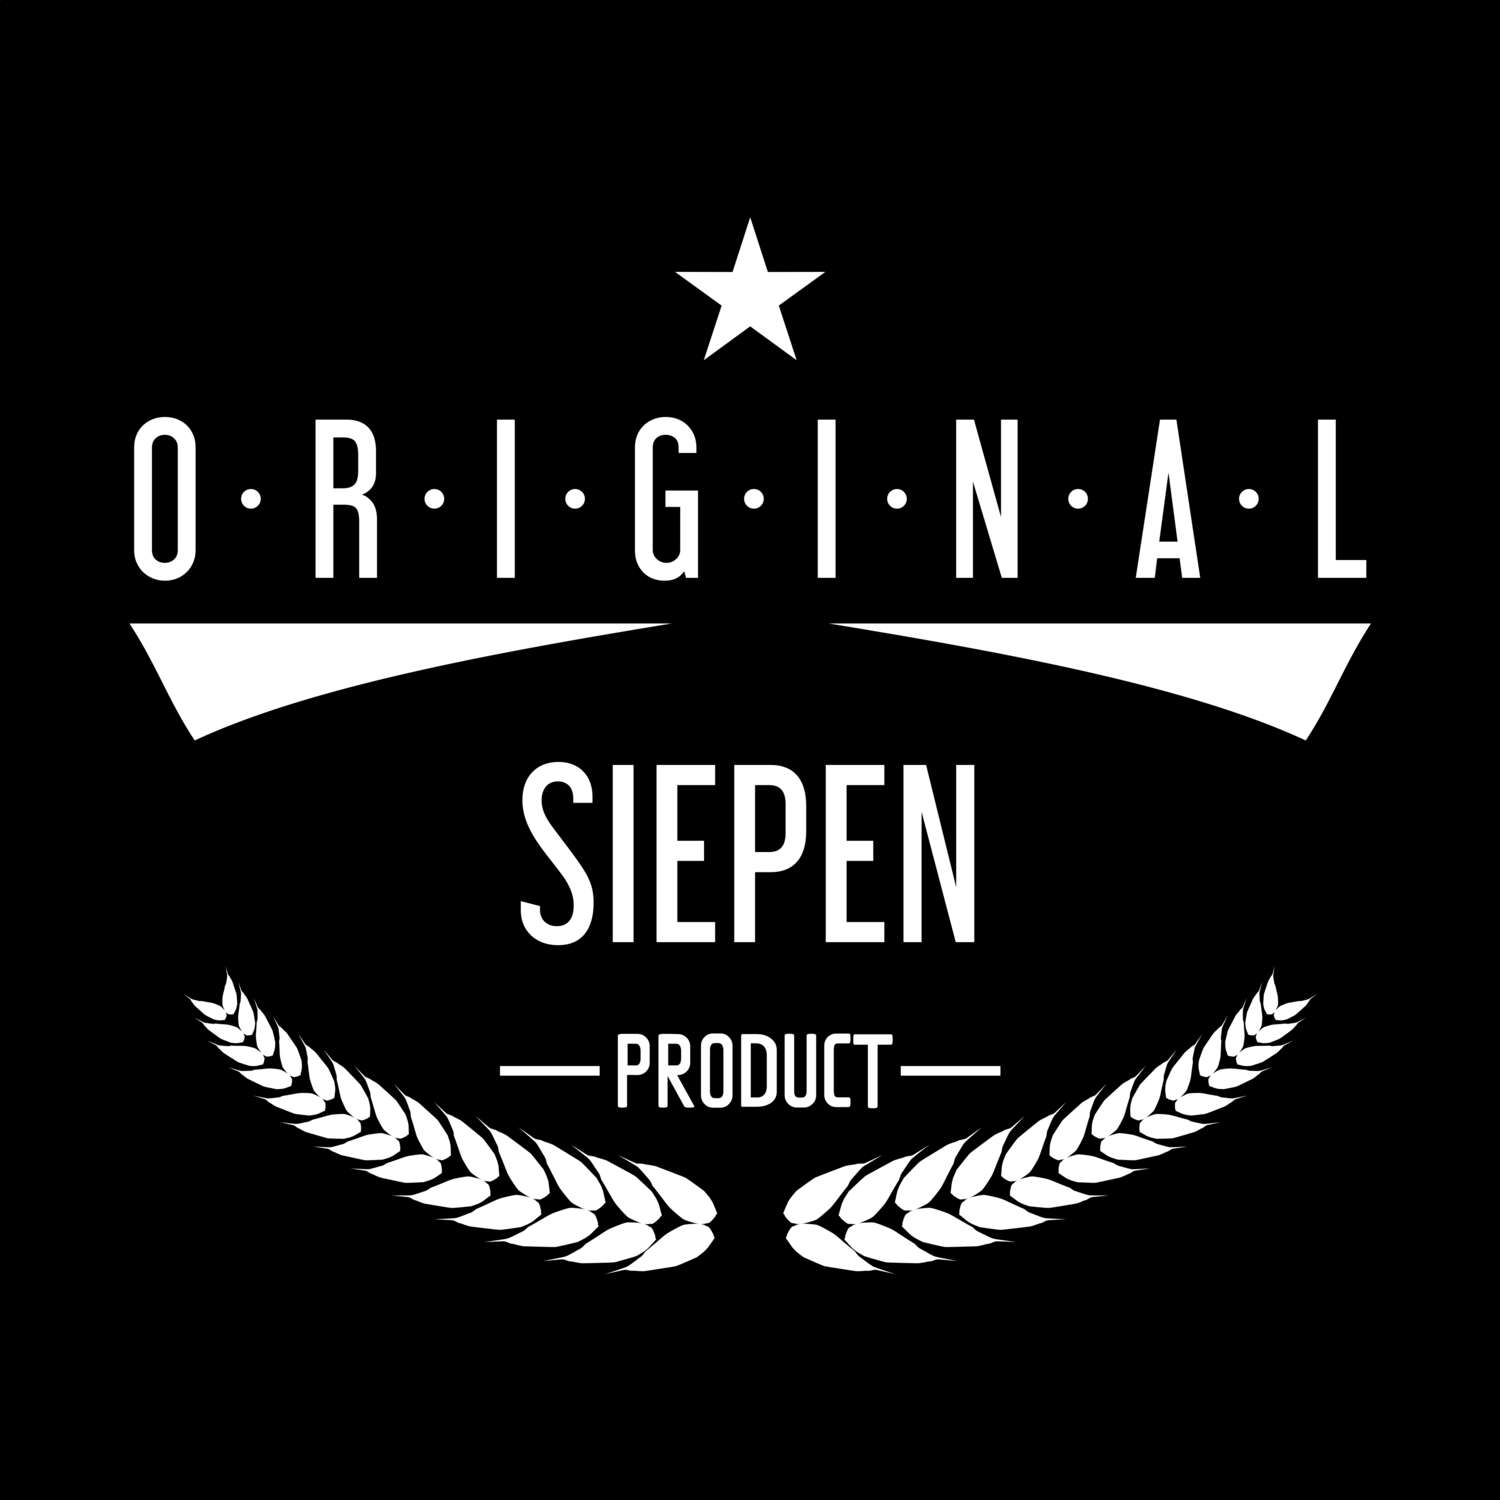 Siepen T-Shirt »Original Product«